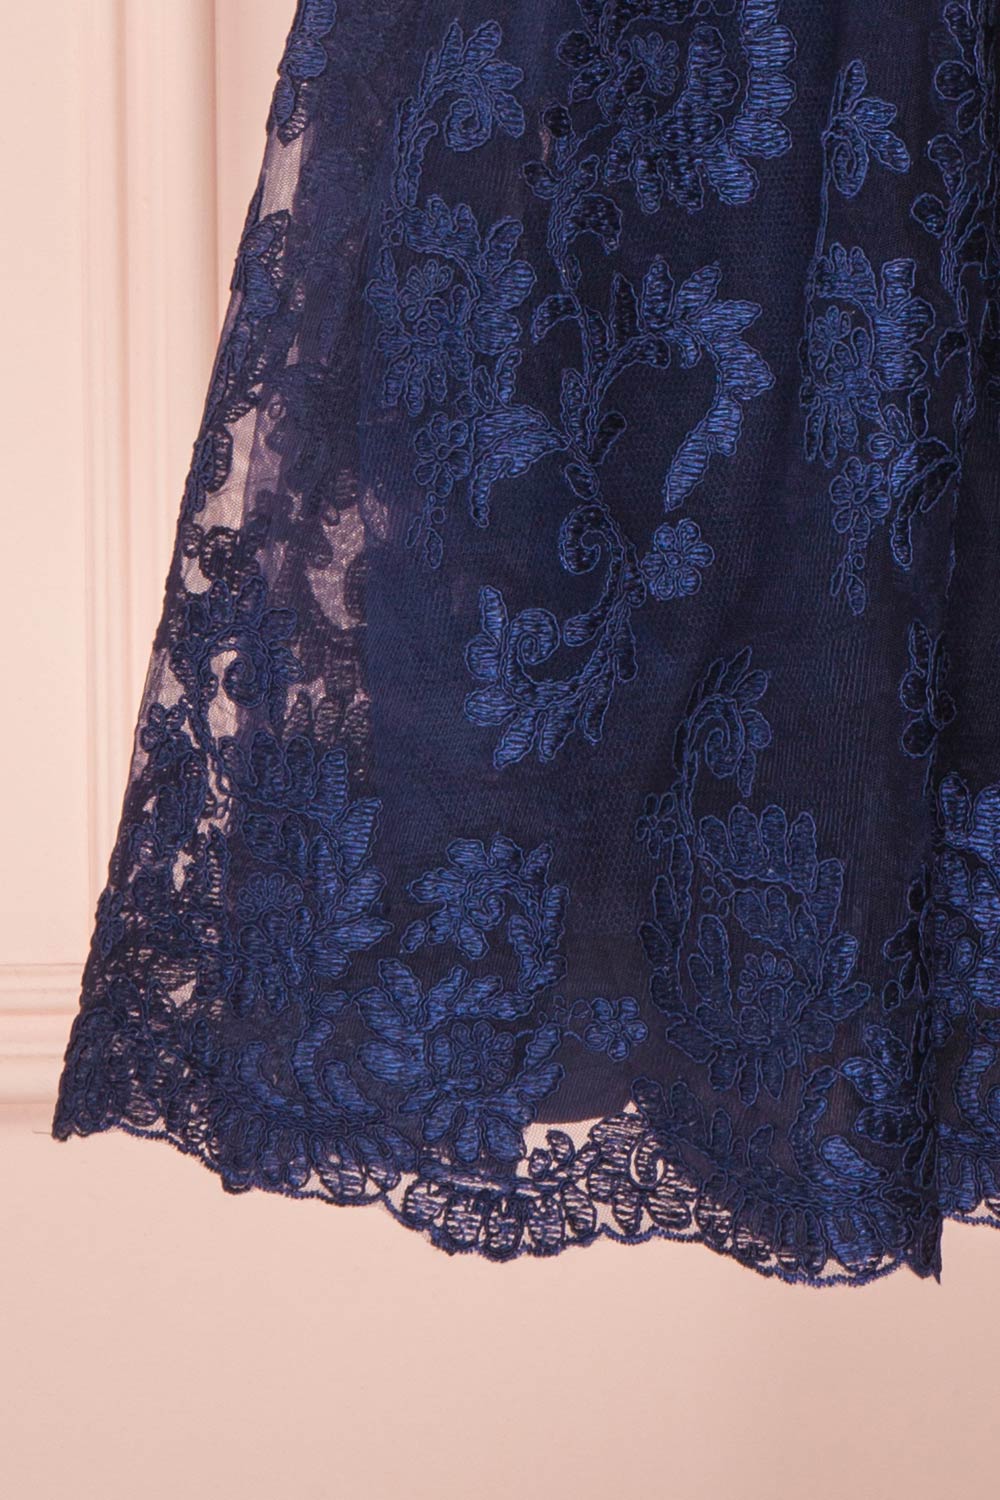 Agun Bleu Navy Blue Floral Embroidered A-Line Dress | Boutique 1861